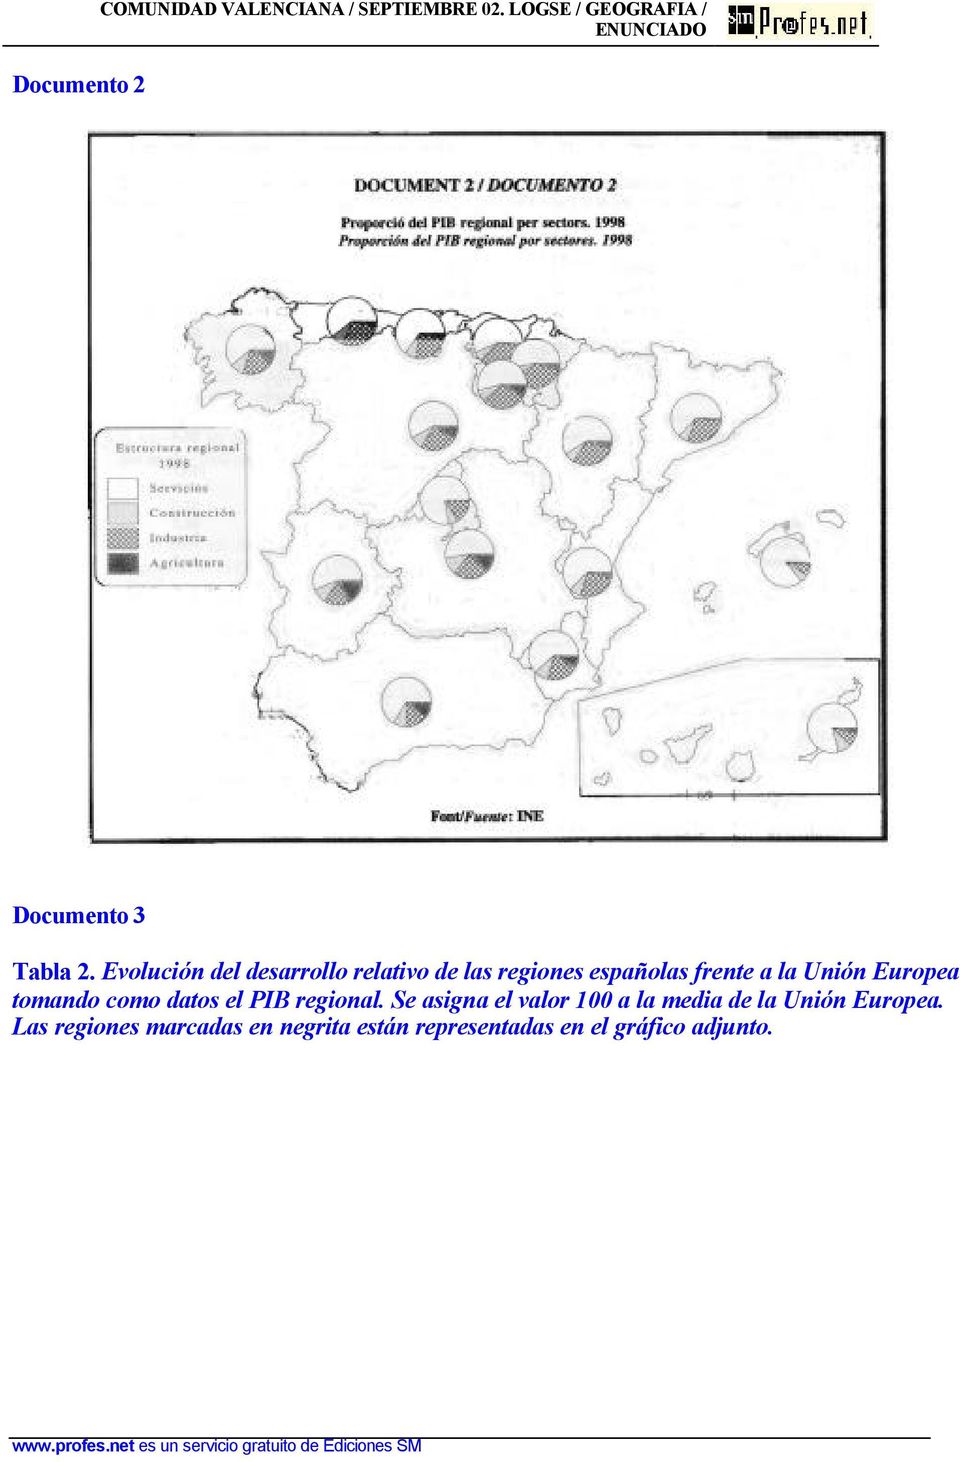 Evolución del desarrollo relativo de las regiones españolas frente a la Unión Europea